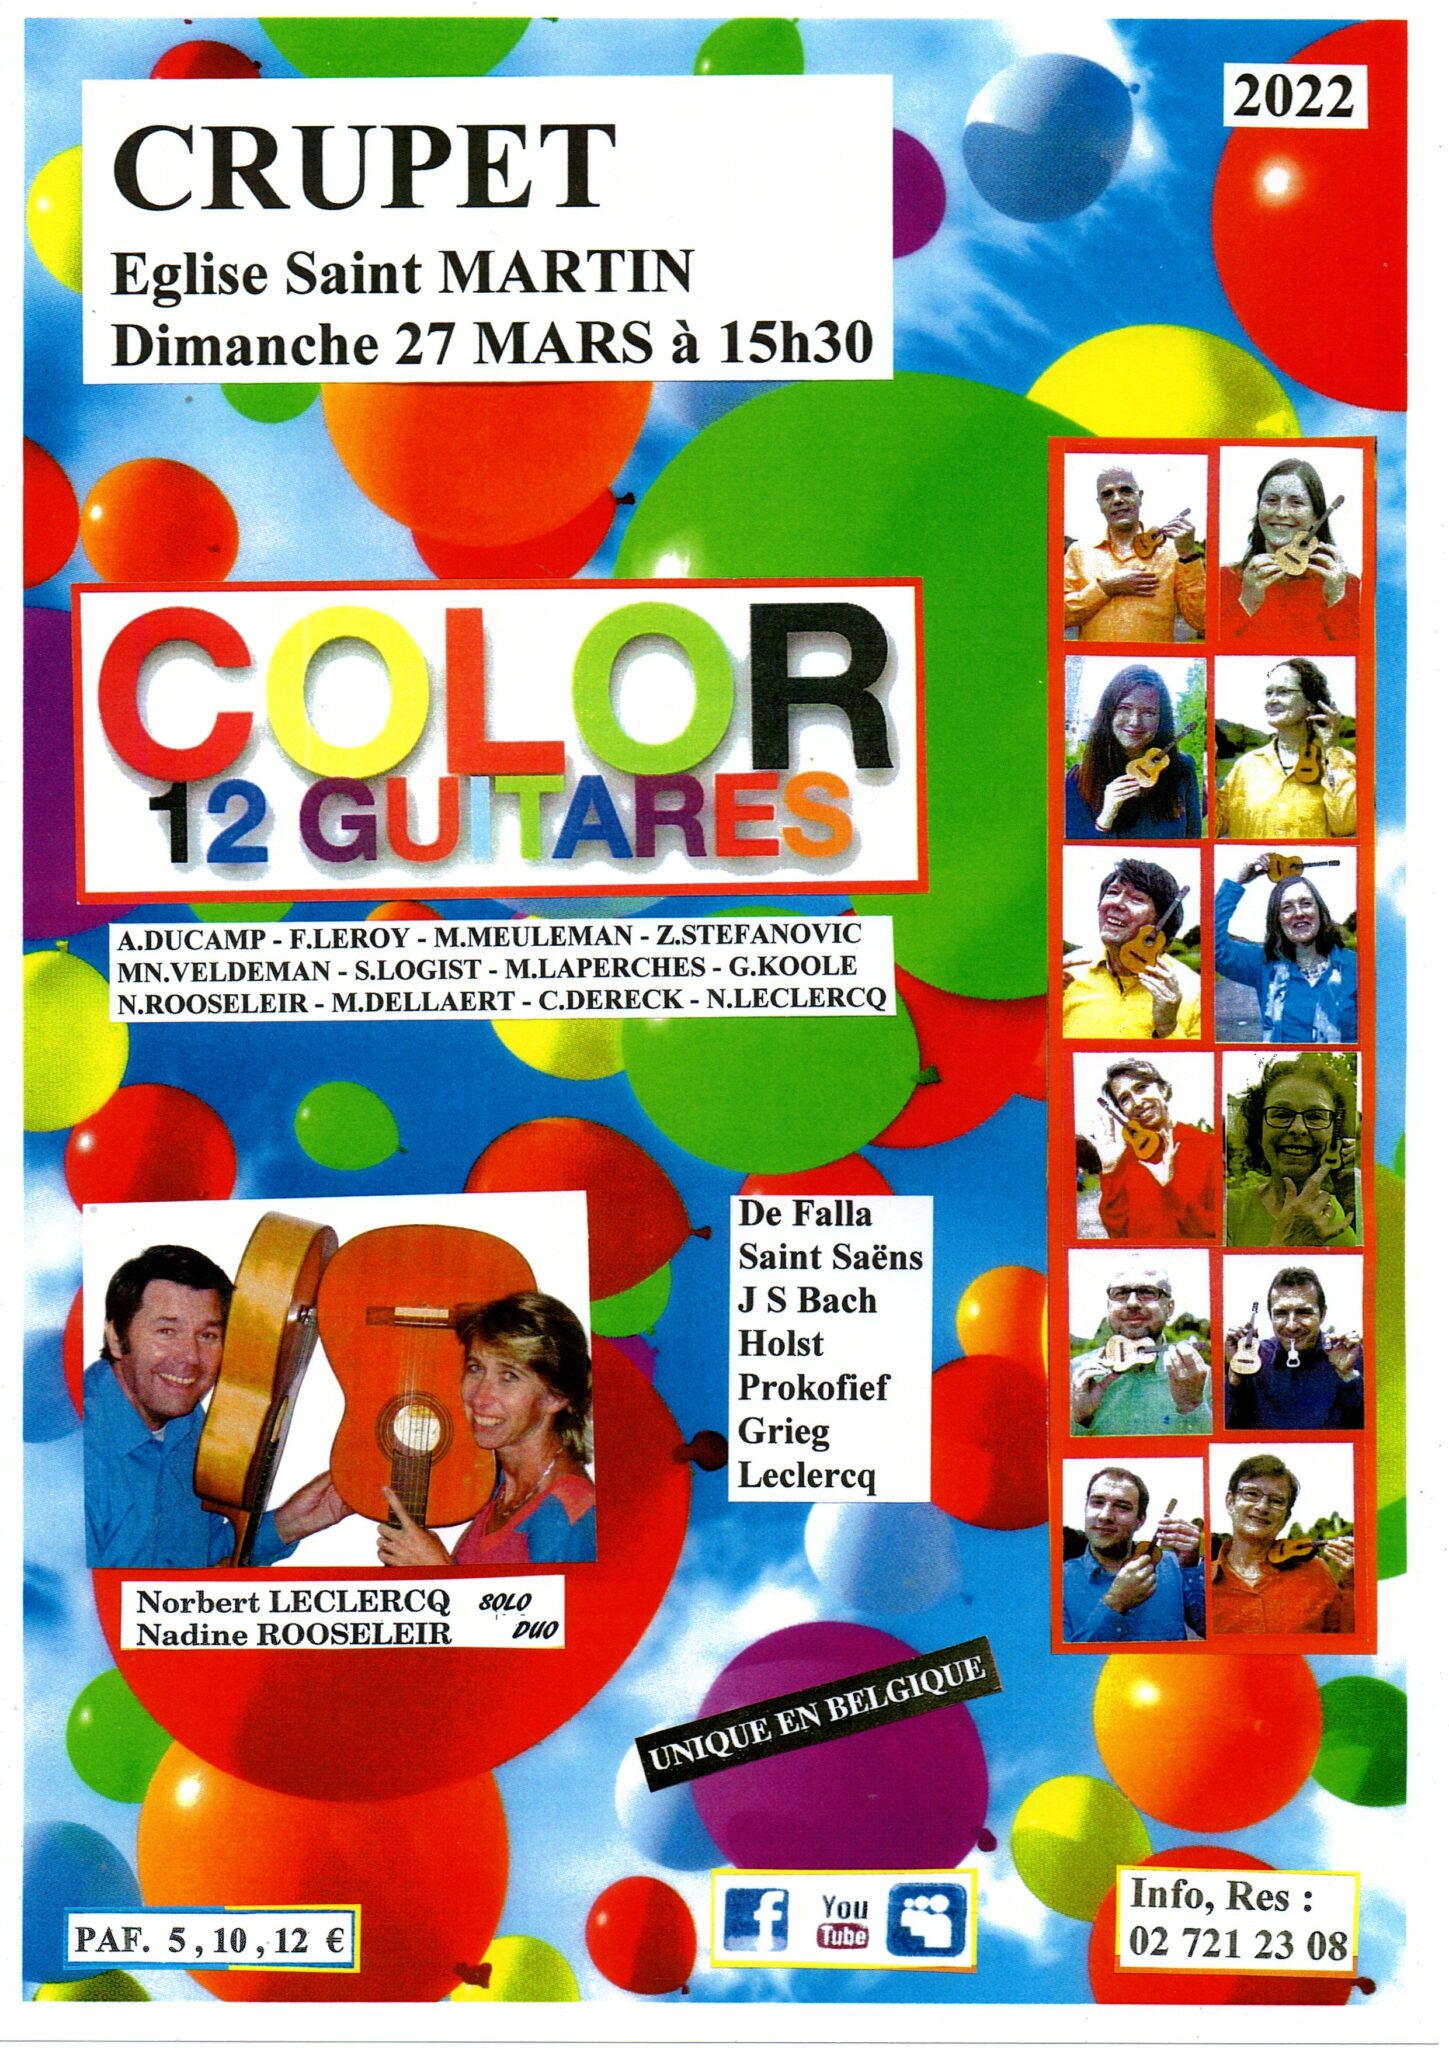 color 12 guitares @ eglise saint martin 5332 crupet | Sint-Lambrechts-Woluwe | Vlaams Gewest | België